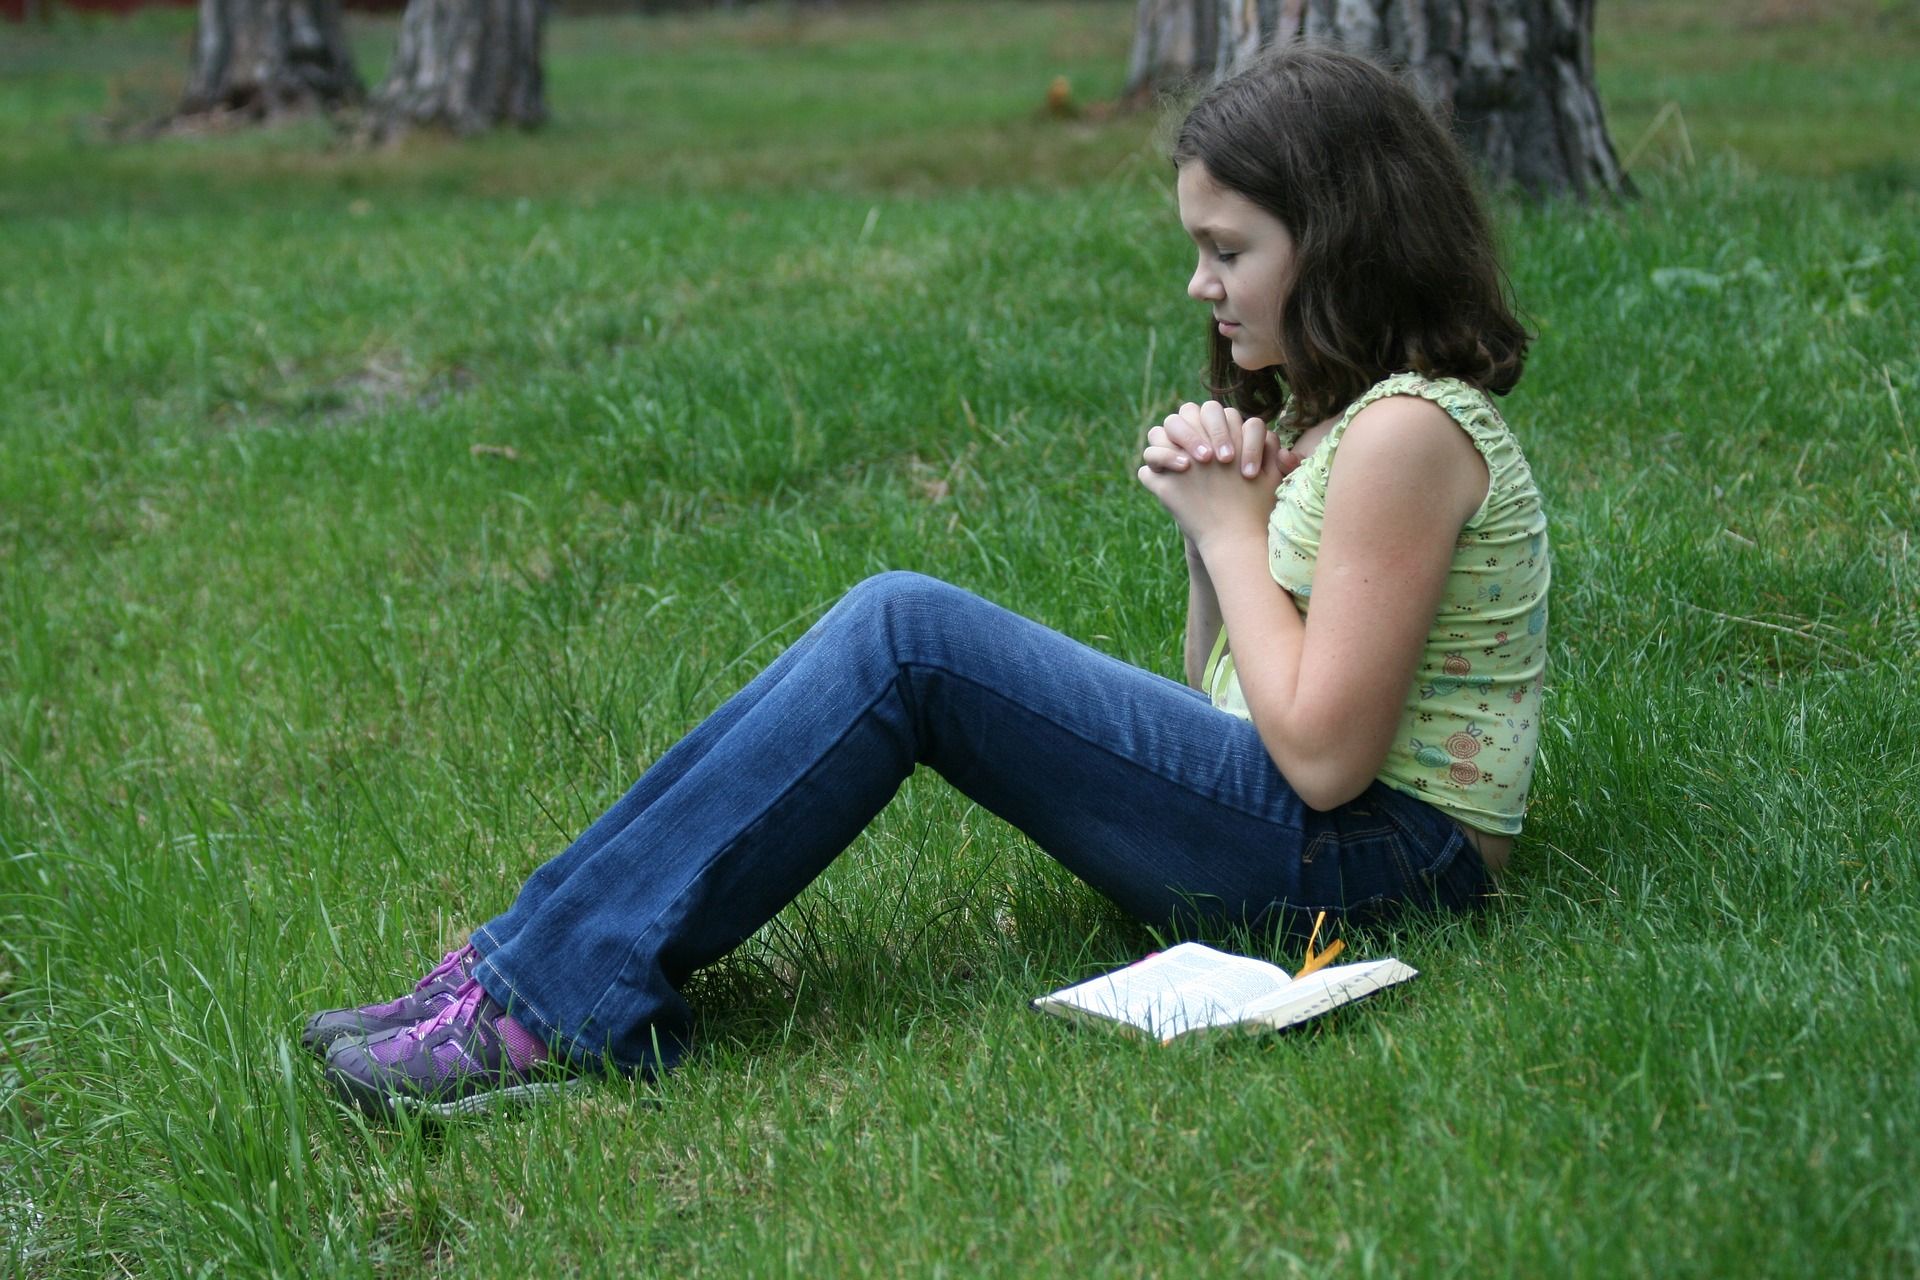 praying girl wallpaper,people in nature,grass,sitting,lawn,botany